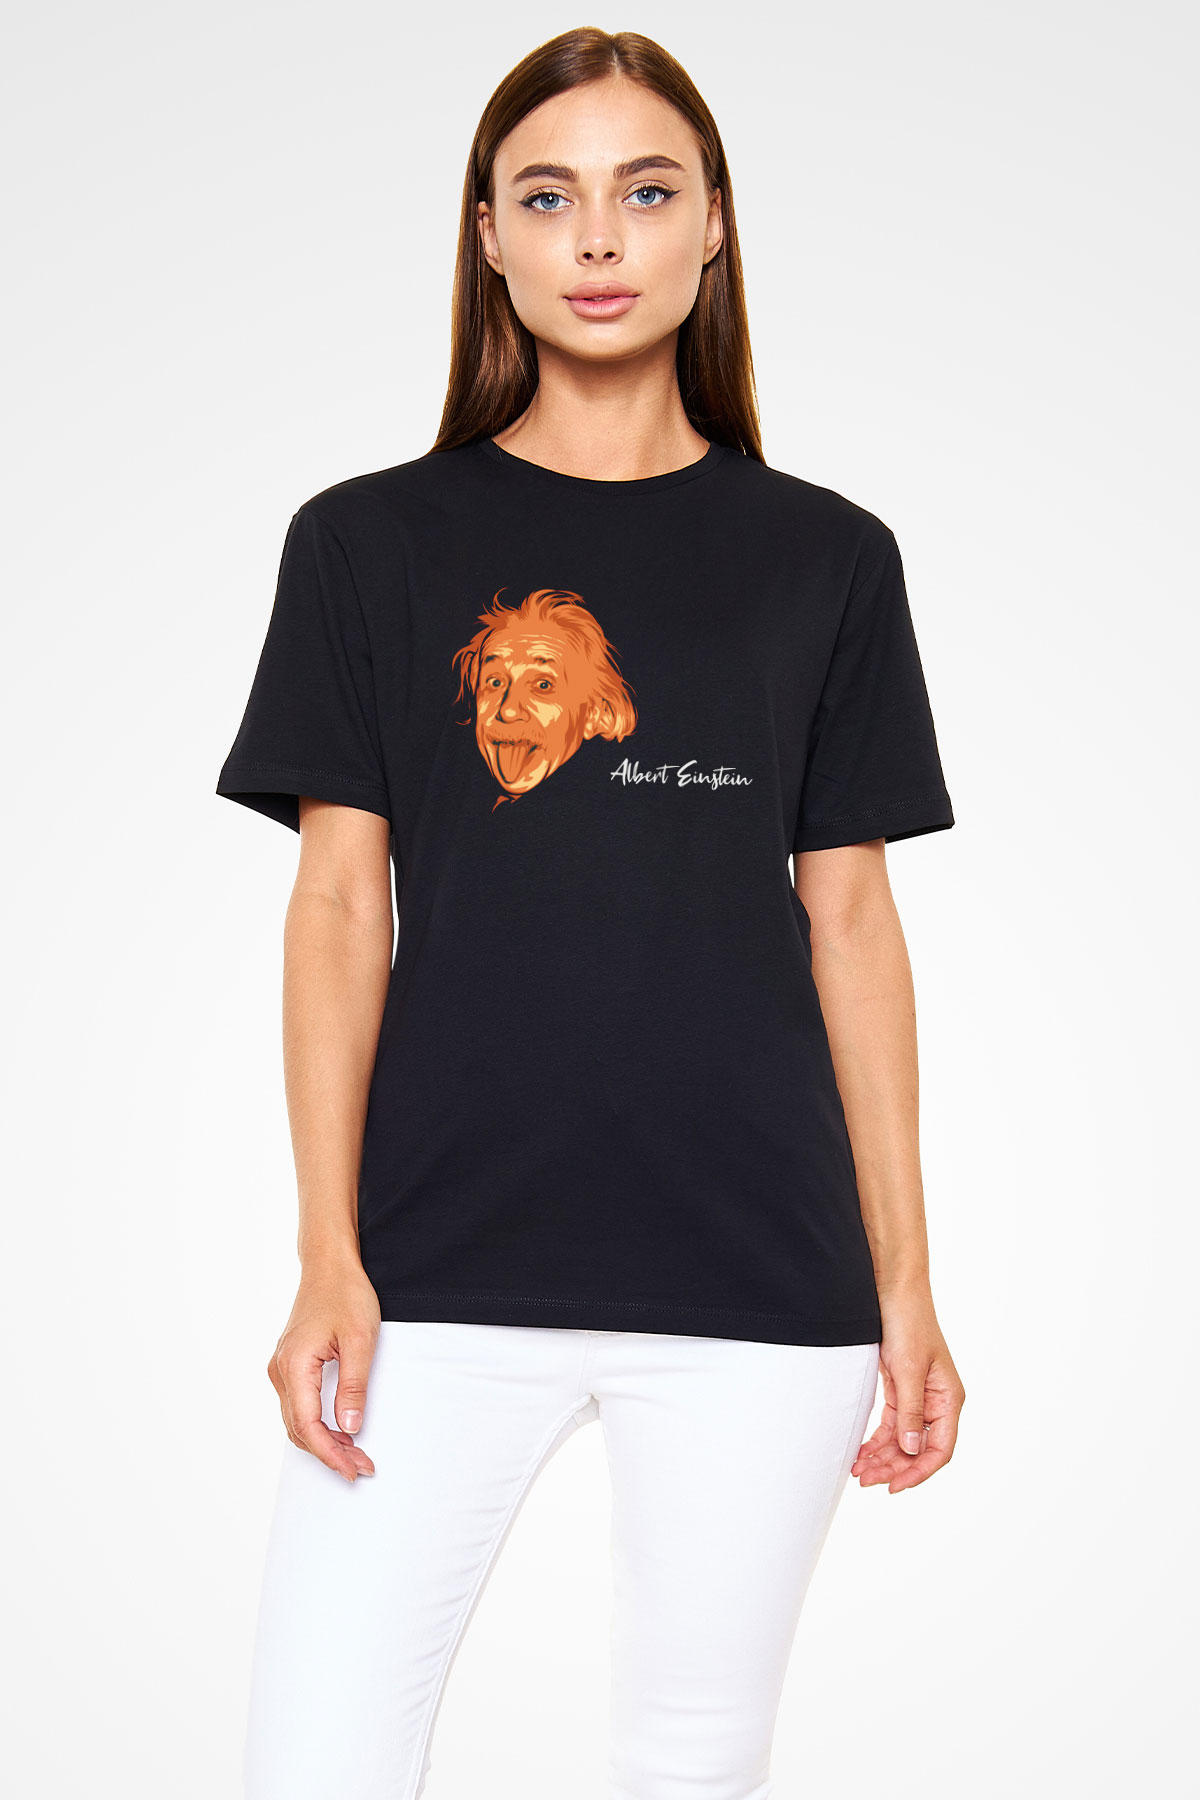 Dil Çıkaran Albert Einstein Baskılı Unisex Siyah Tişört